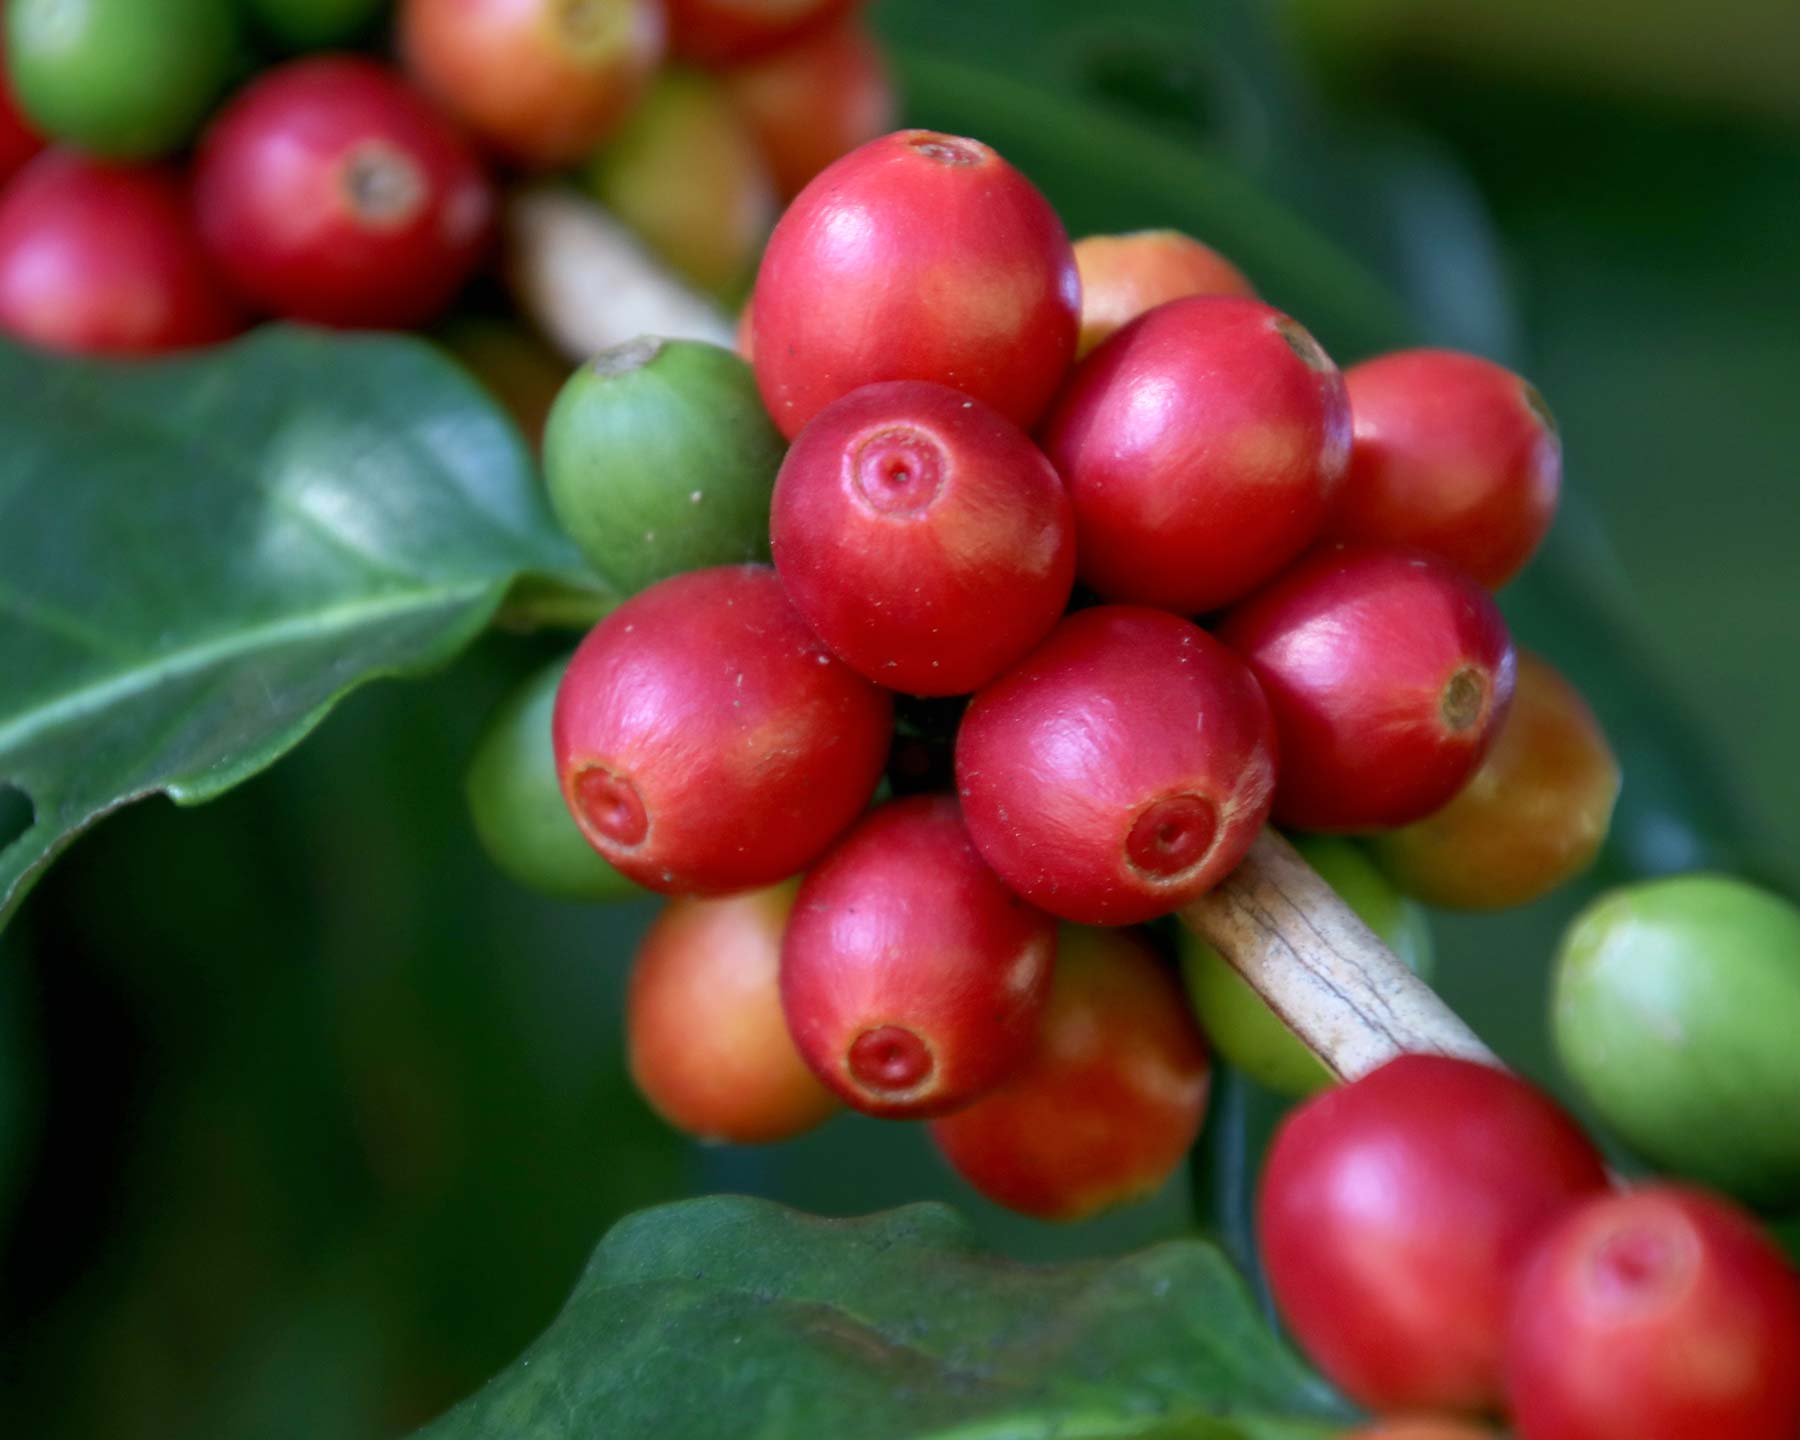 Coffea arabica beans